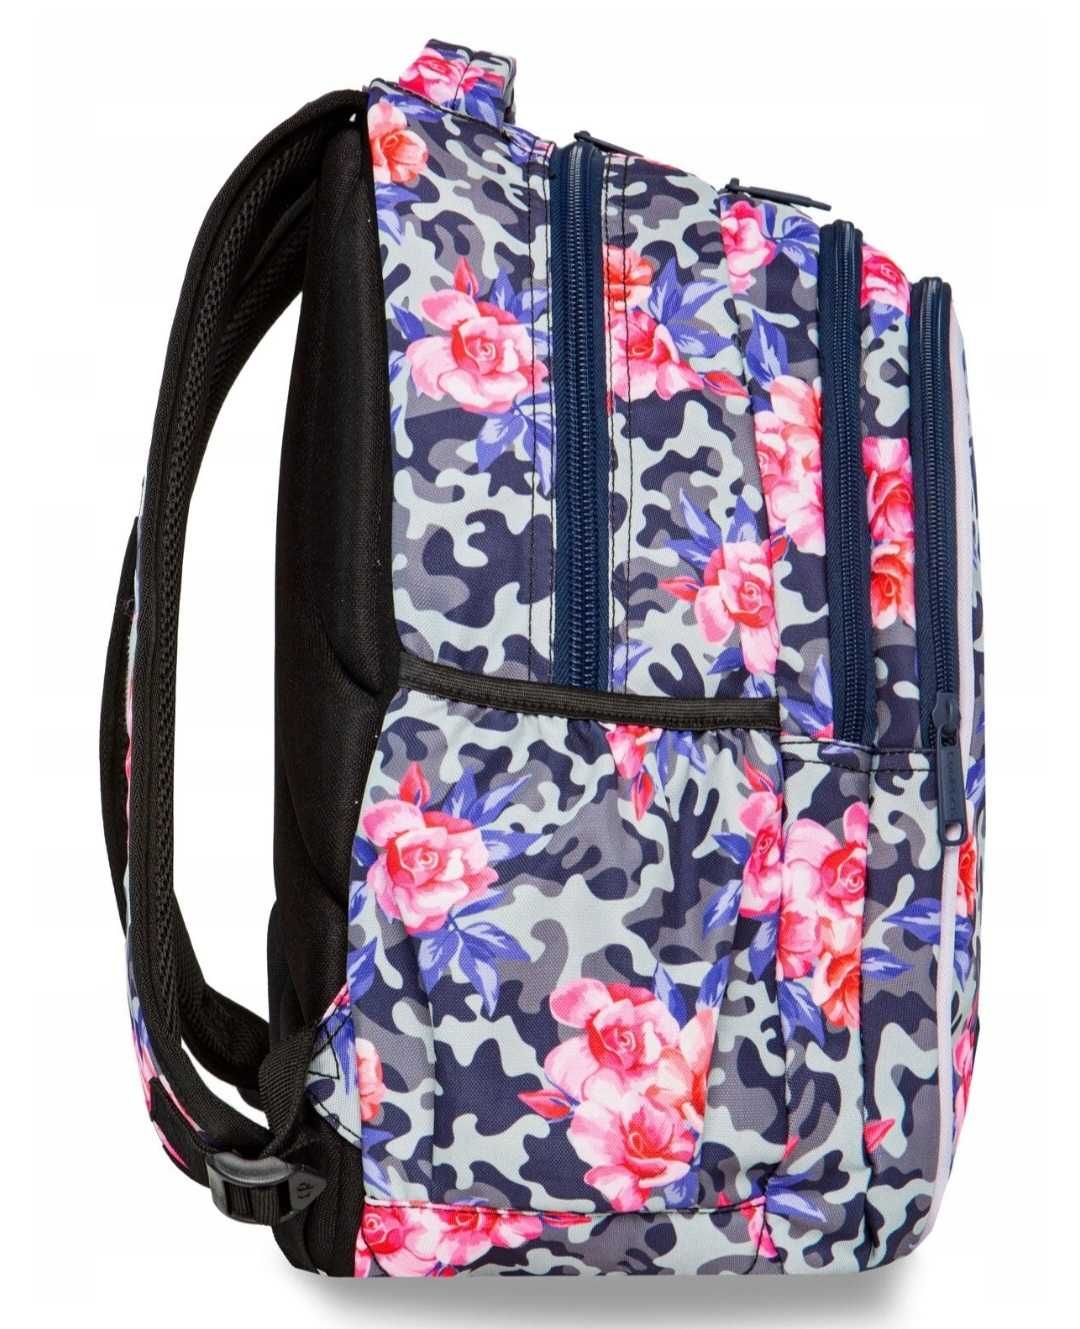 Plecak szkolny Coolpack dla dziewczyny